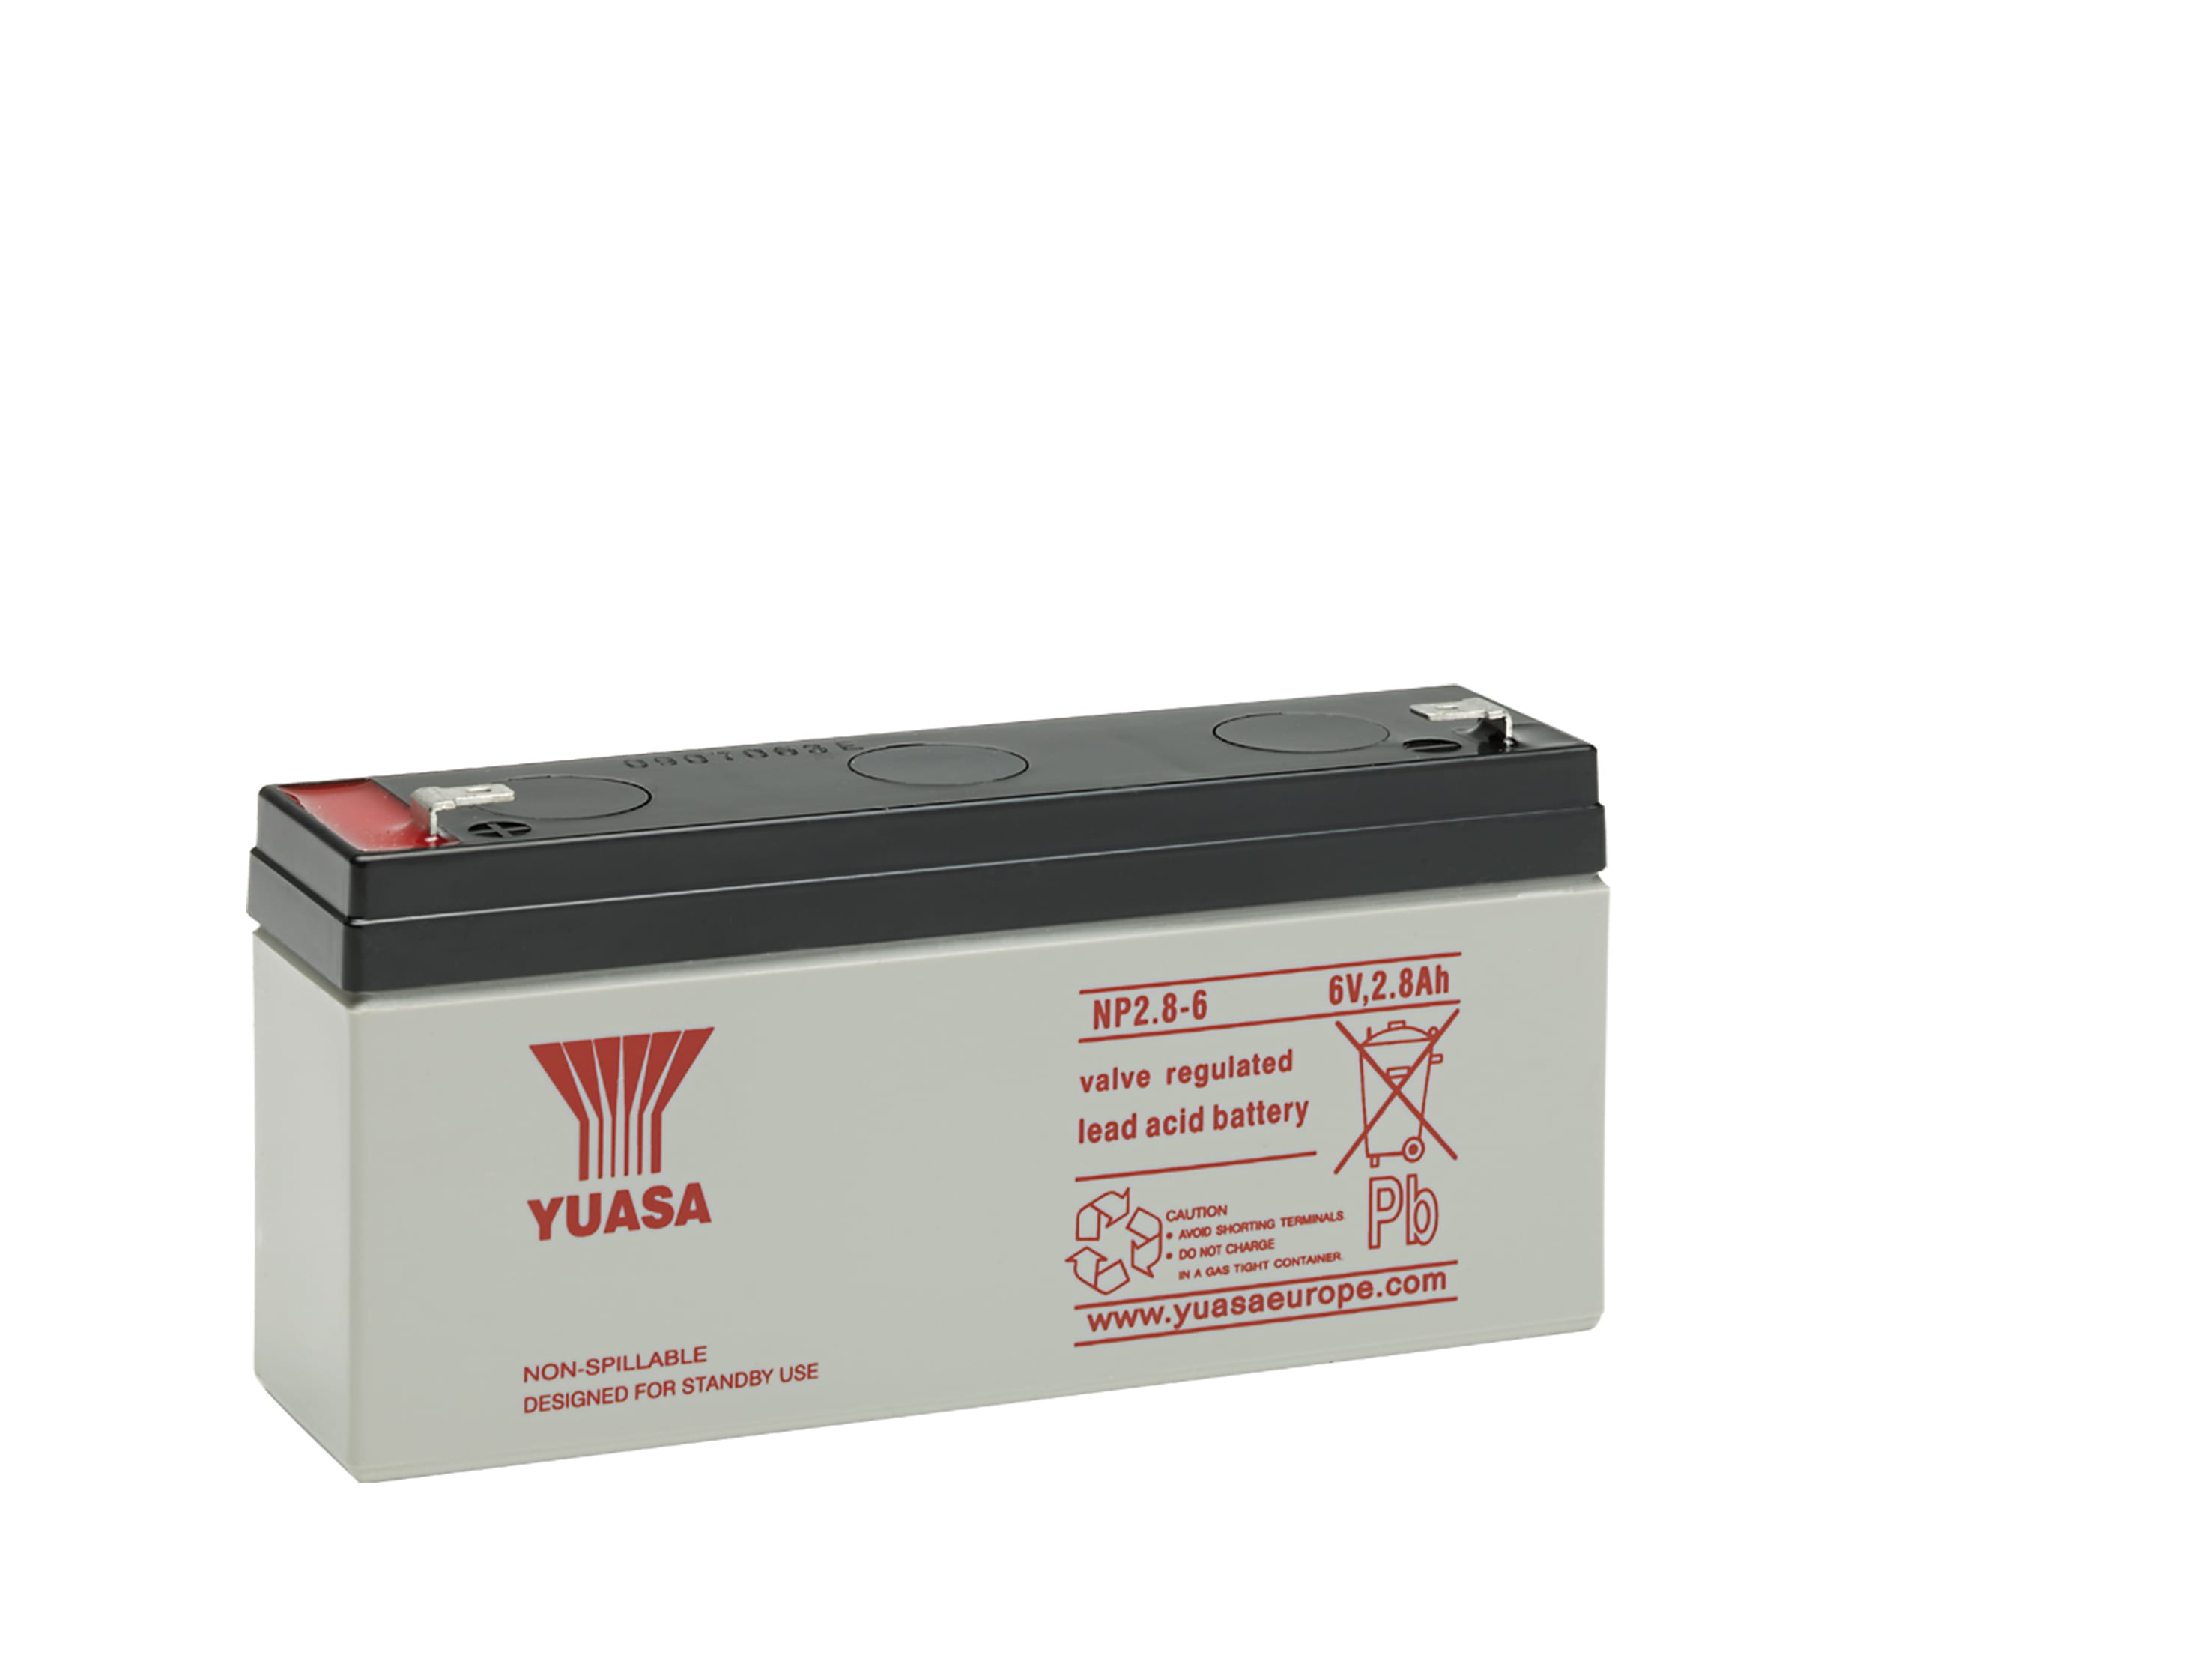 Yuasa - Batterie stationnaire étanche au plomb NP 2.8Ah 6V ? bac standard